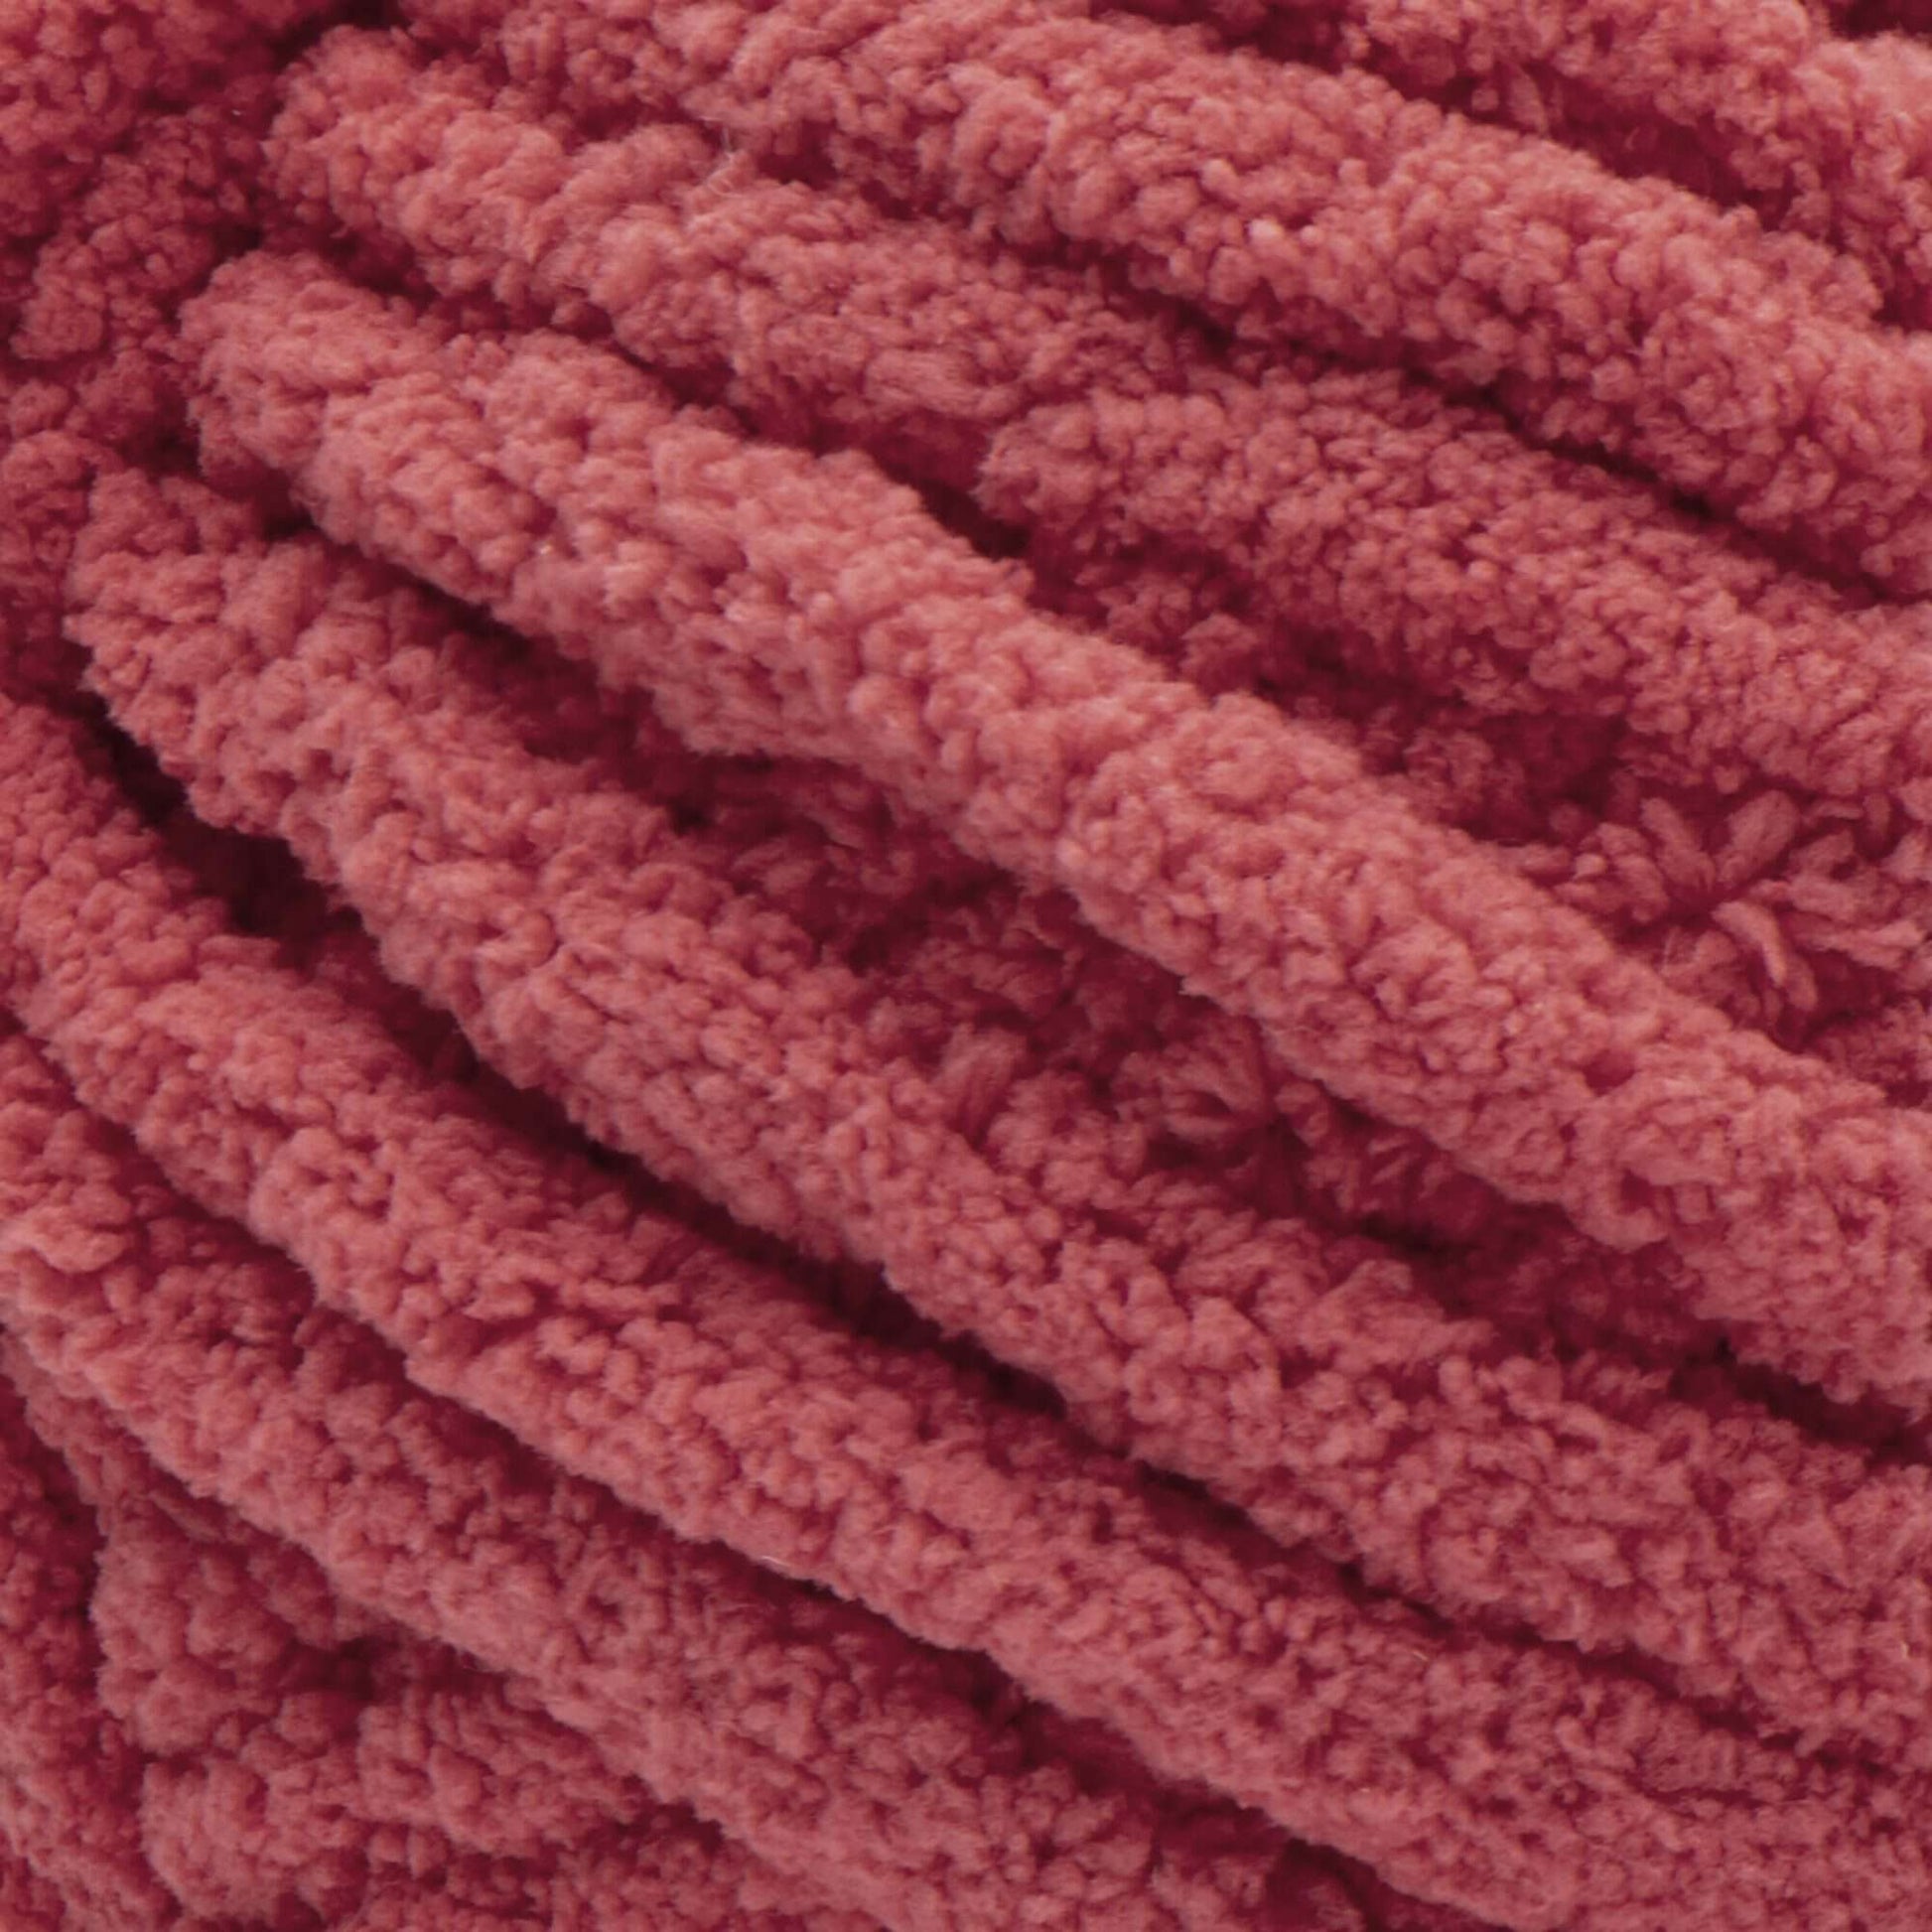 Bernat Blanket Extra Yarn-Velveteal, 1 count - Kroger